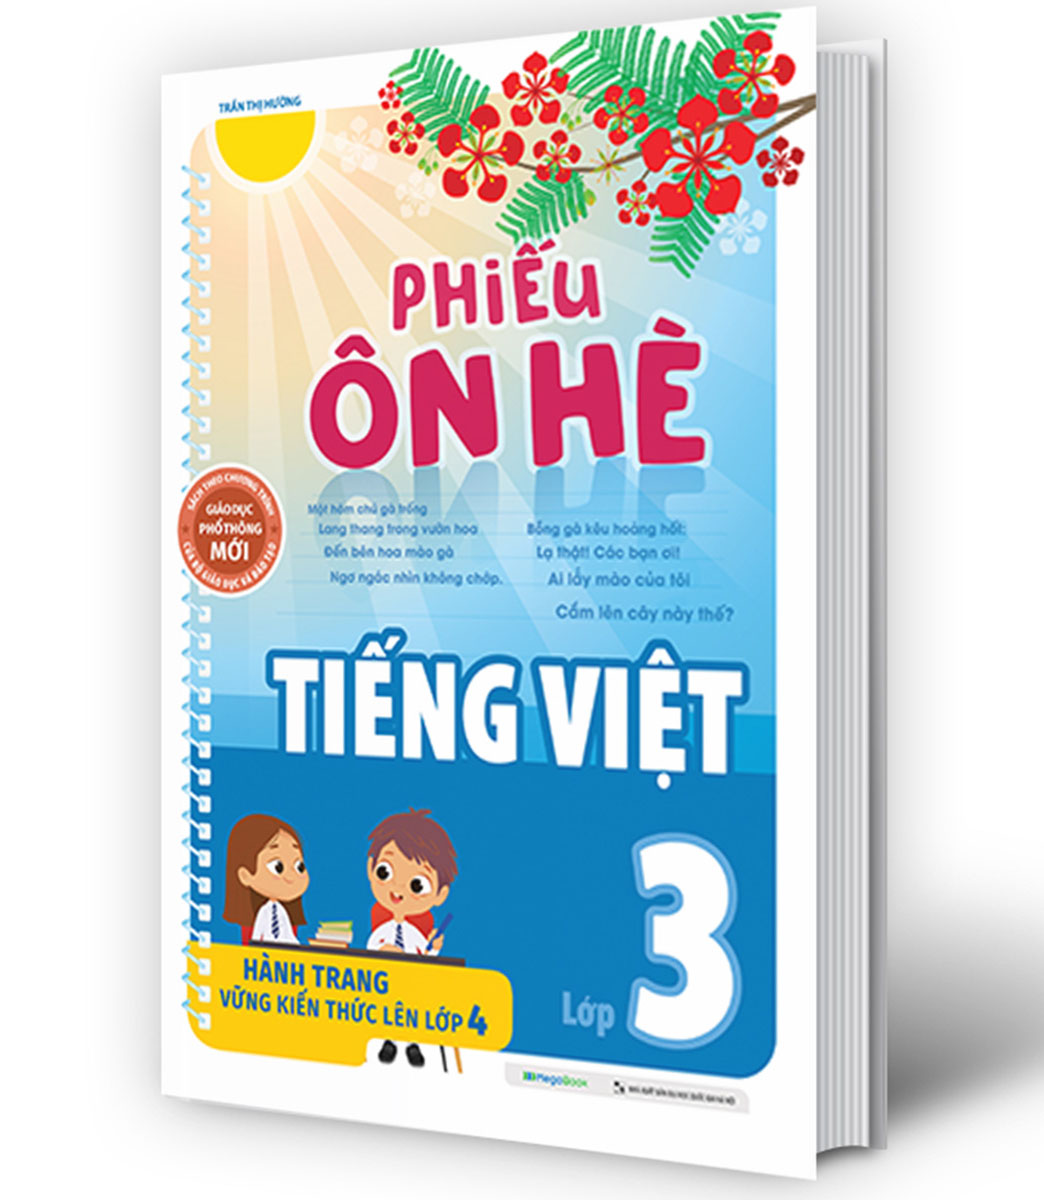 Phiếu Ôn Hè Tiếng Việt Lớp 3 - Hành Trang Vững Kiến Thức Lên Lớp 4 